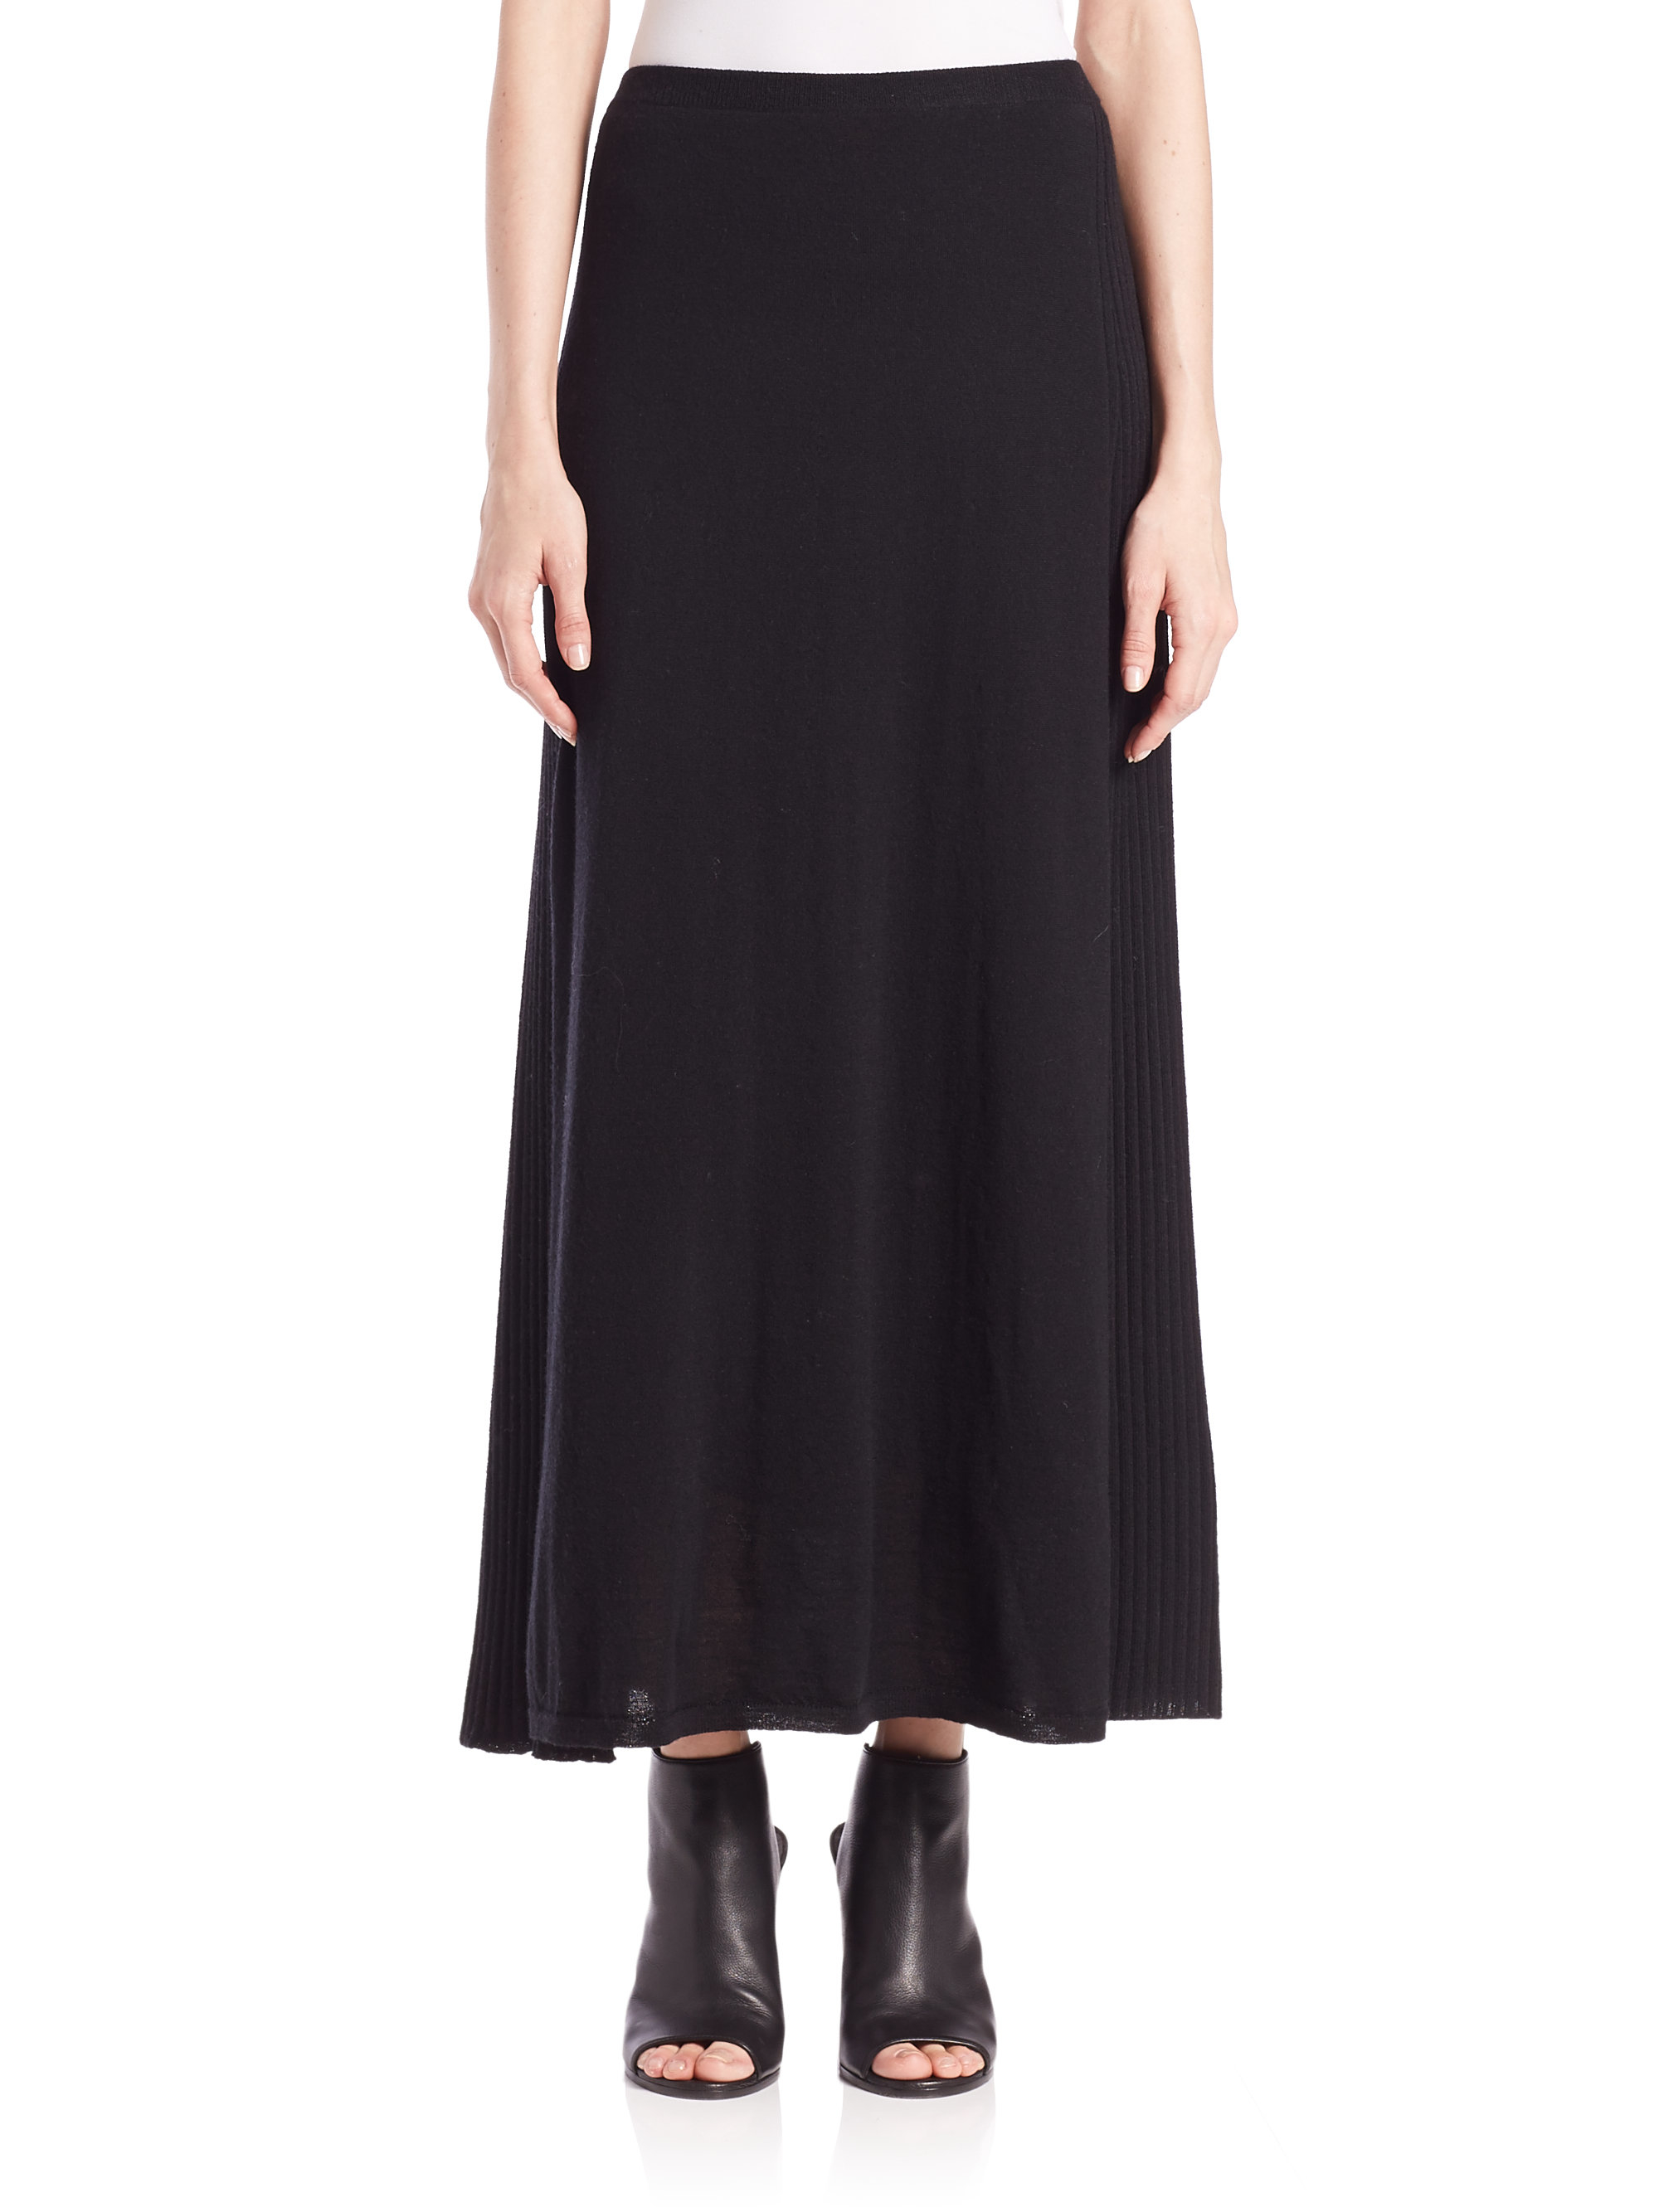 Lyst - Eileen Fisher Wool Jersey Pleat-detail Skirt in Black